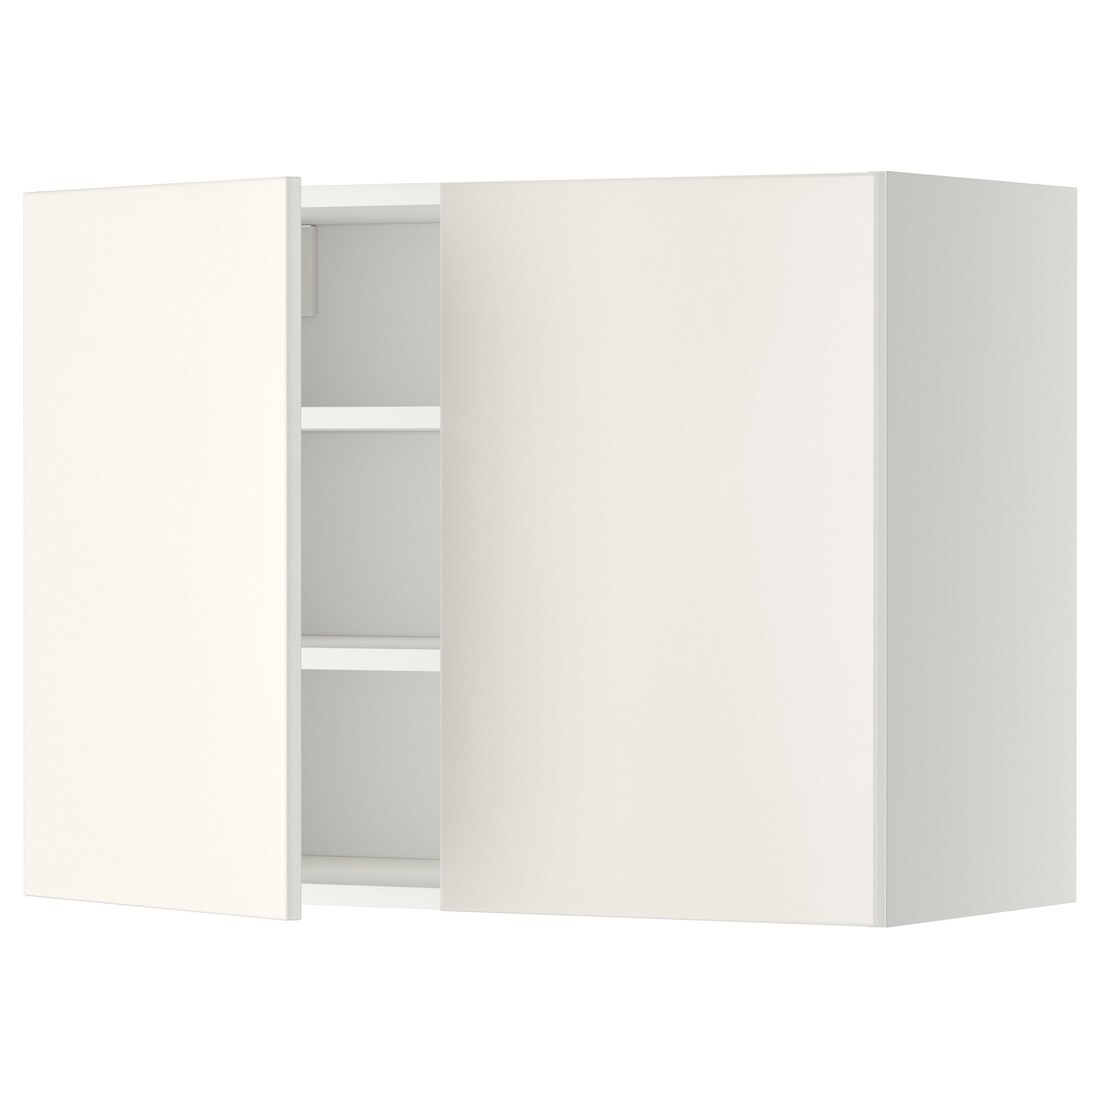 IKEA METOD МЕТОД Навесной шкаф с полками / 2 дверцы, белый / Veddinge белый, 80x60 см 39454542 394.545.42